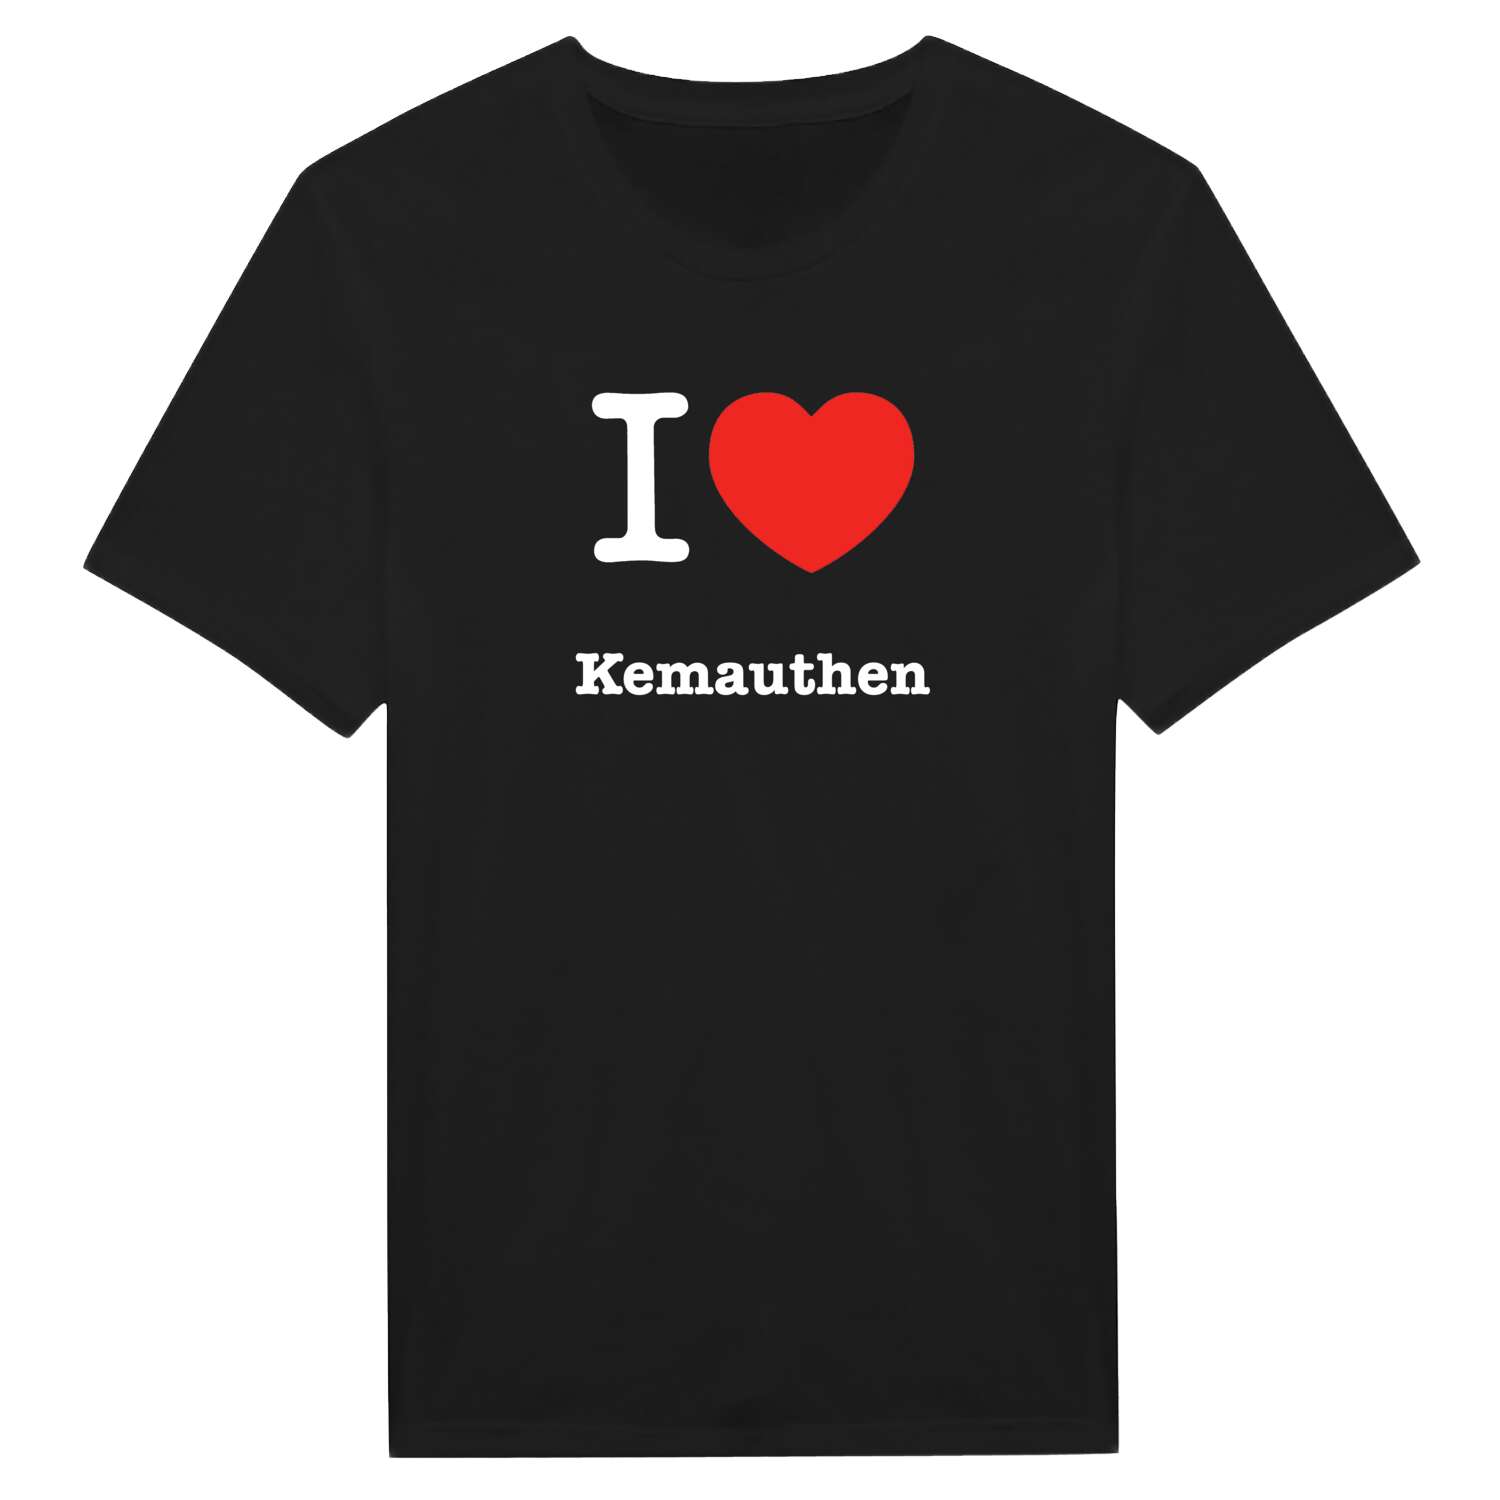 Kemauthen T-Shirt »I love«